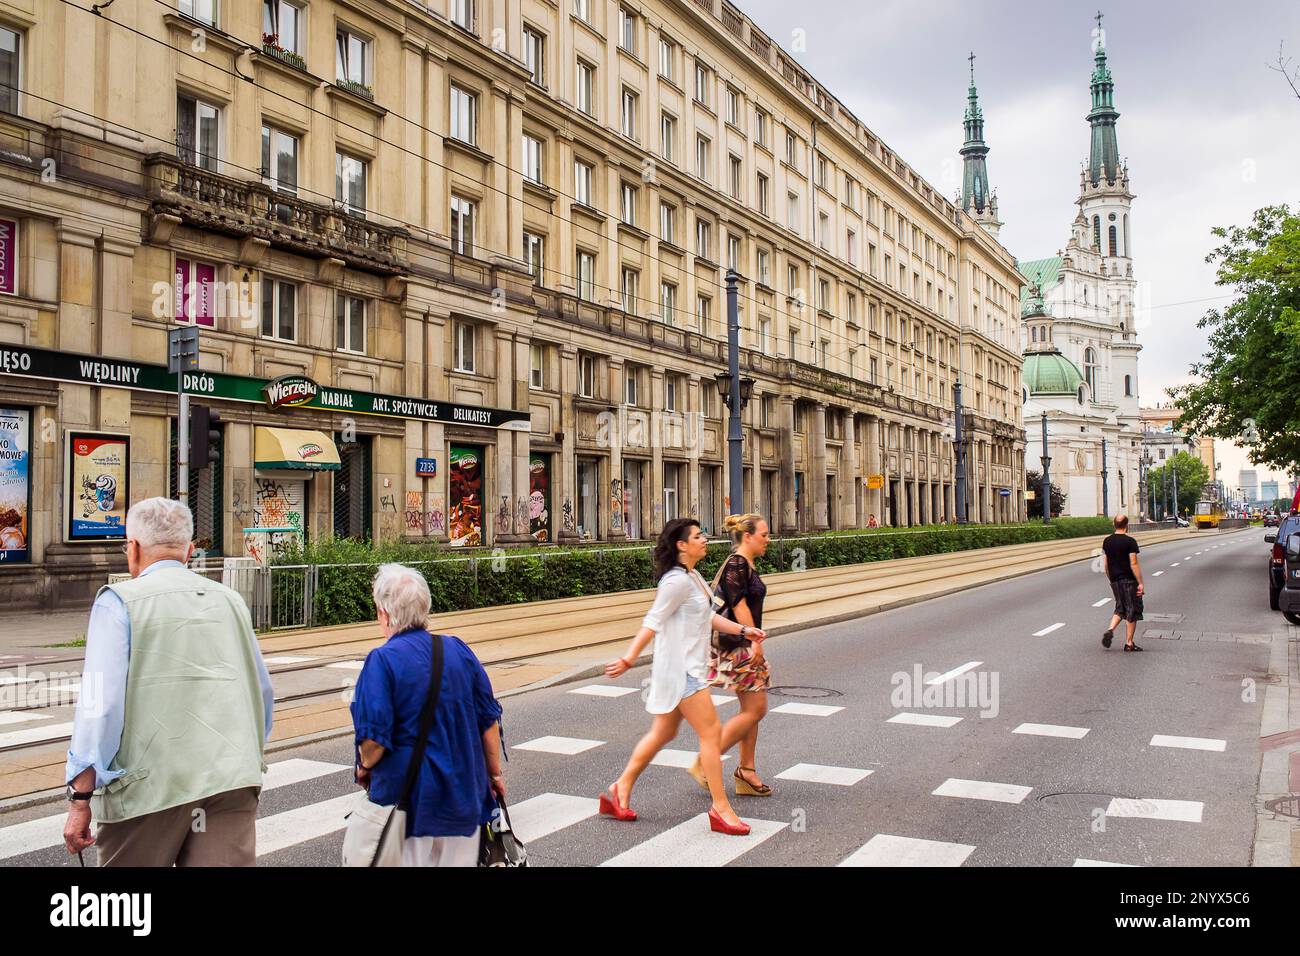 Ul.Marszalkowska Straße, kommunistische Architektur und Städtebau, Warschau, Polen Stockfoto